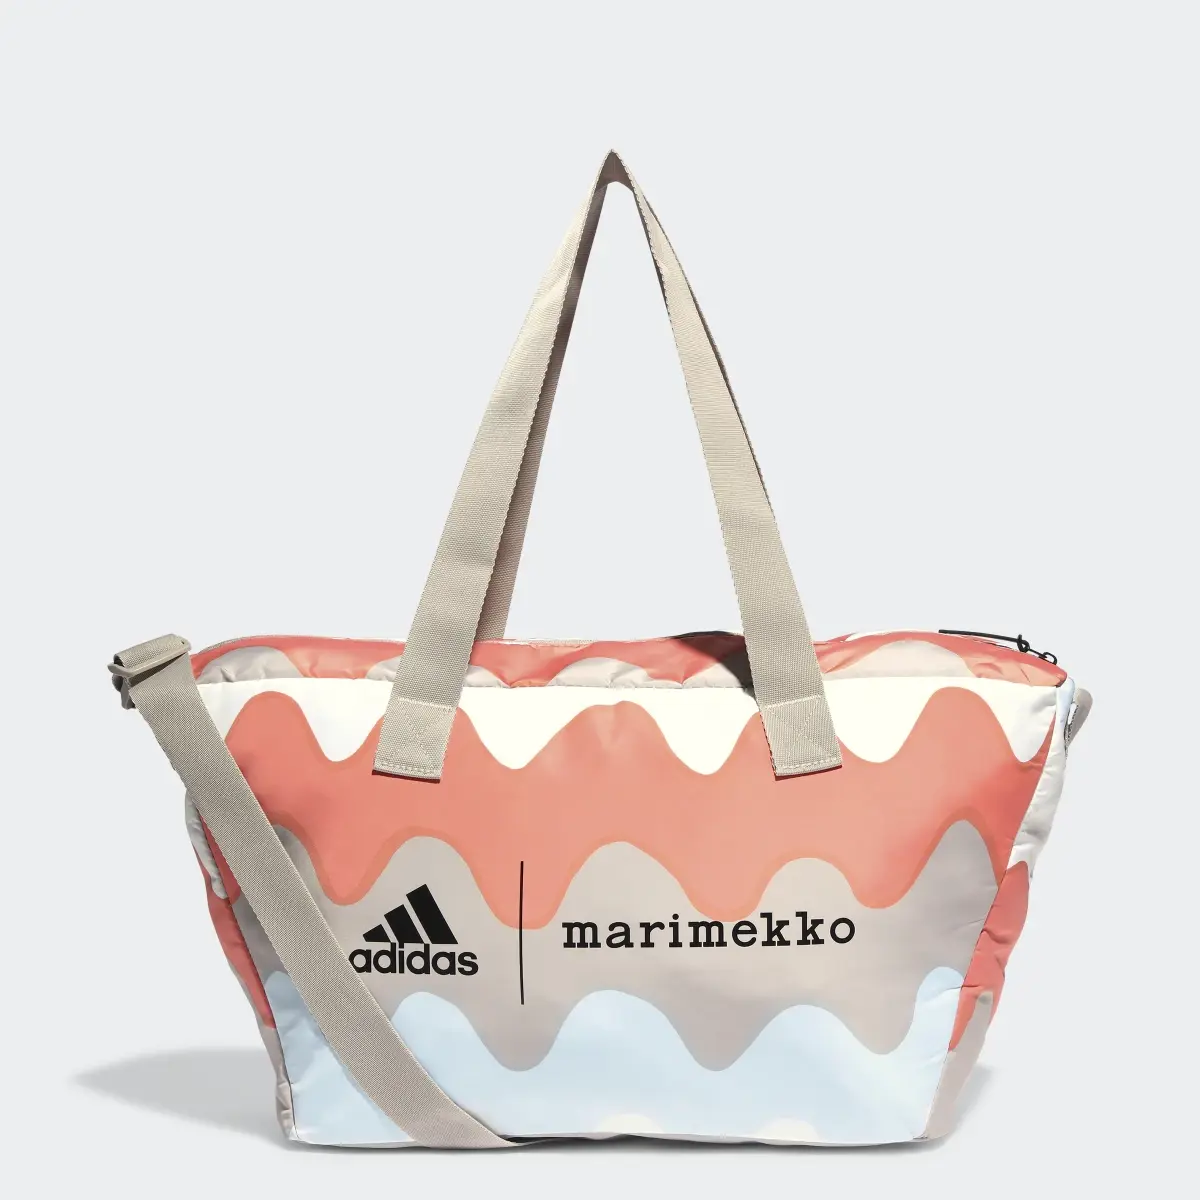 Adidas x Marimekko Shopper Designed 2 Move Training Bag. 1